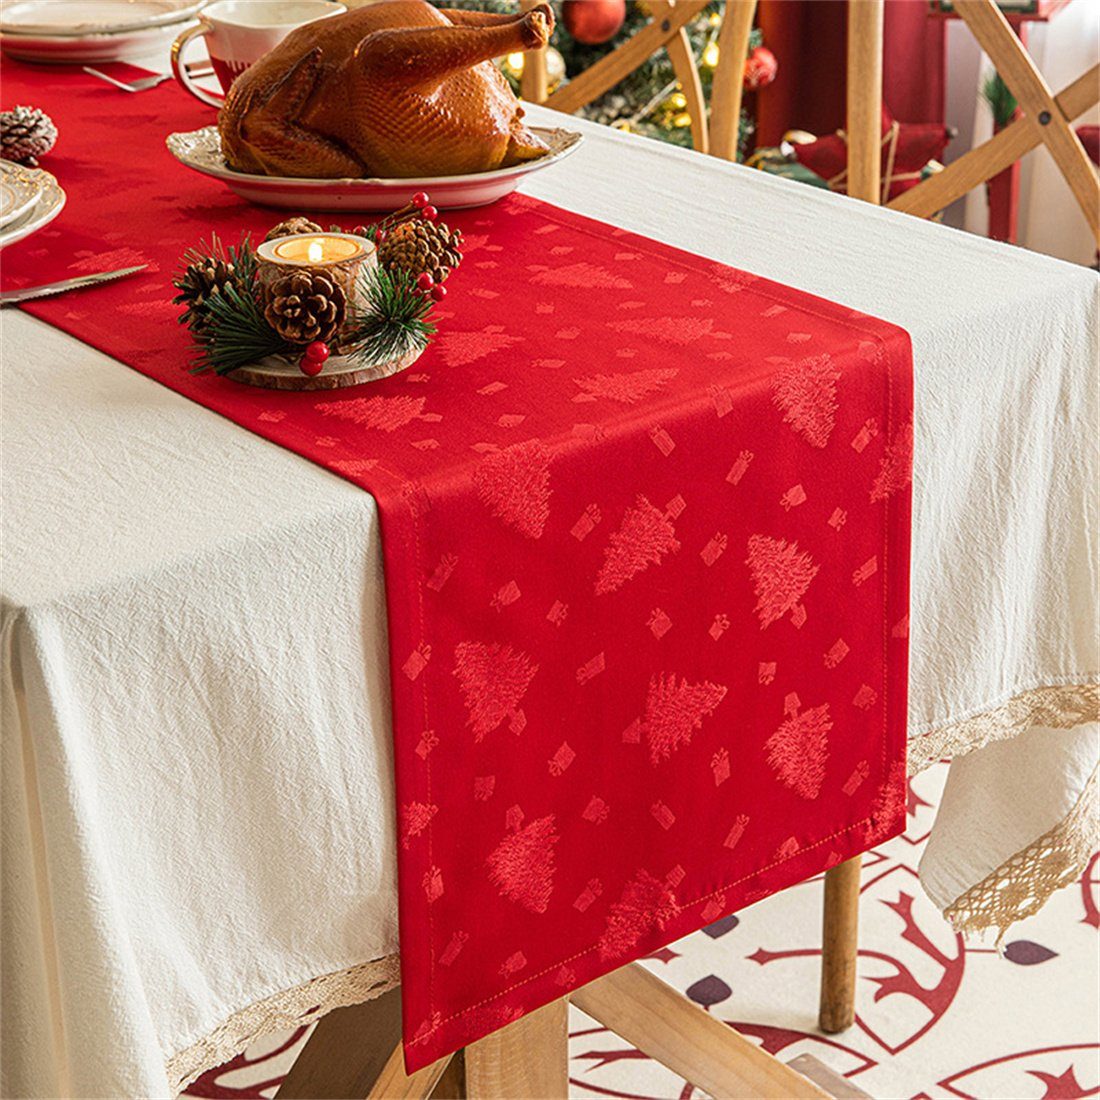 Tischflaggen Tischläufer Tischdecke,Festliche Weihnachtsdekoration Party DÖRÖY Gedruckte